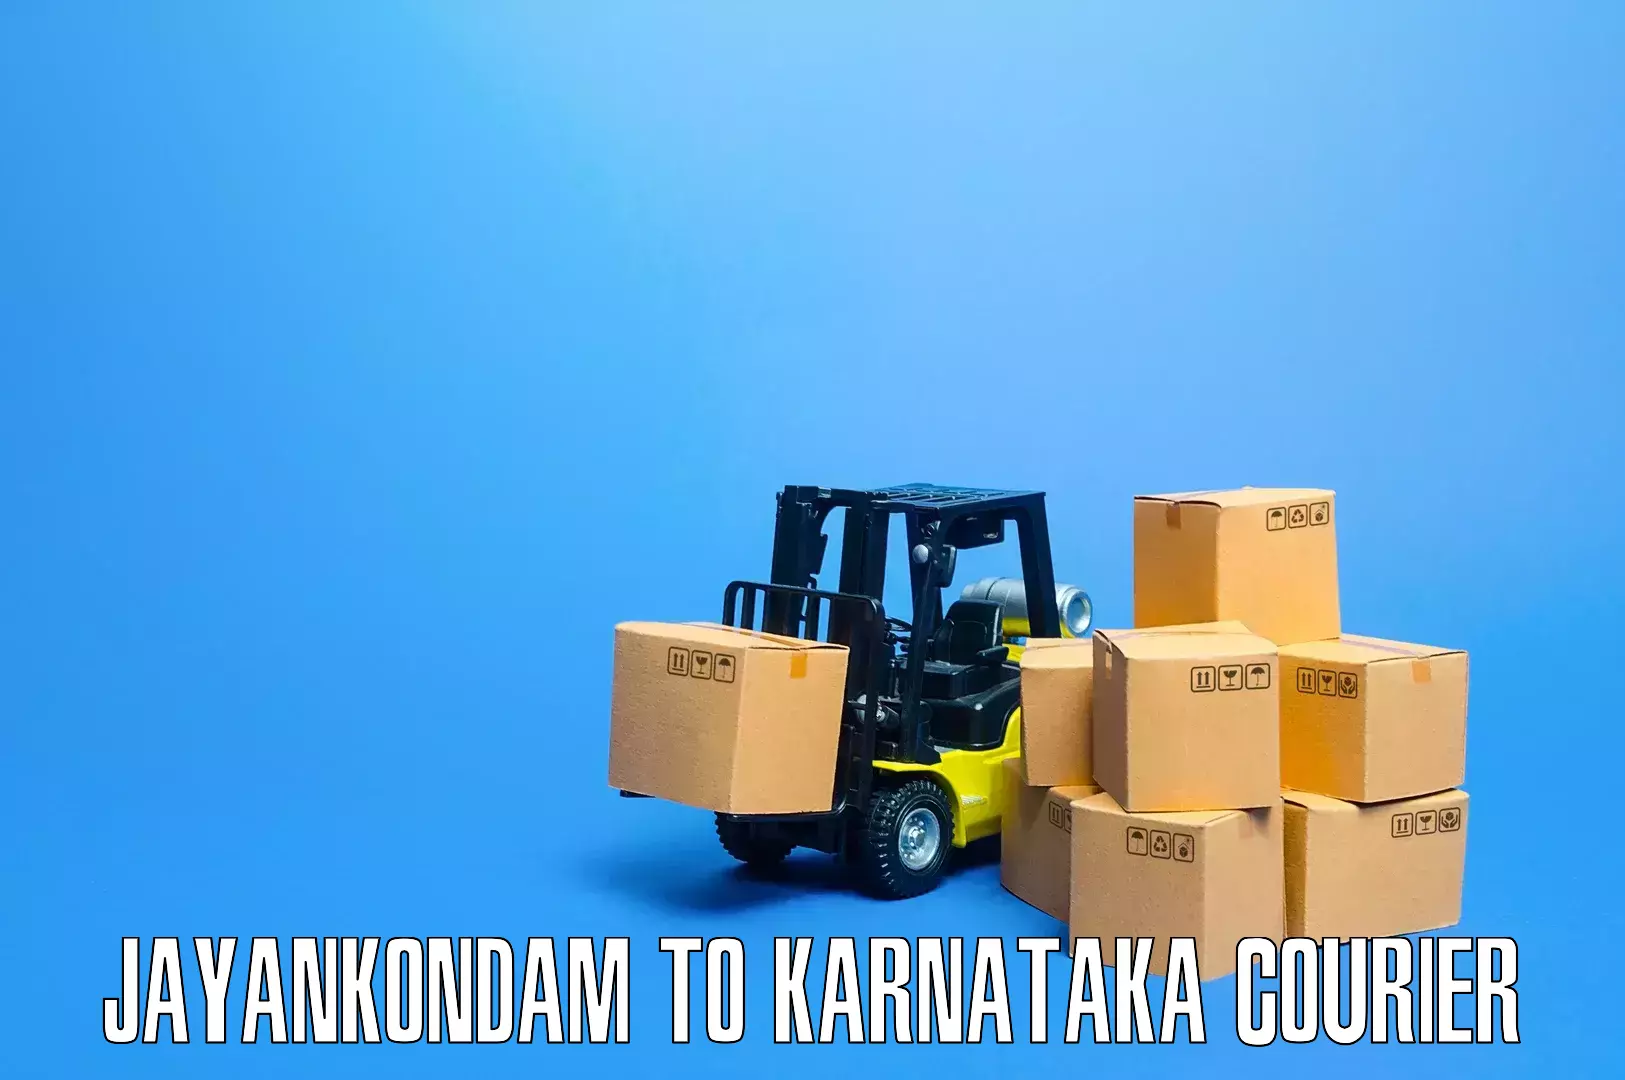 Quality moving and storage Jayankondam to Anavatti